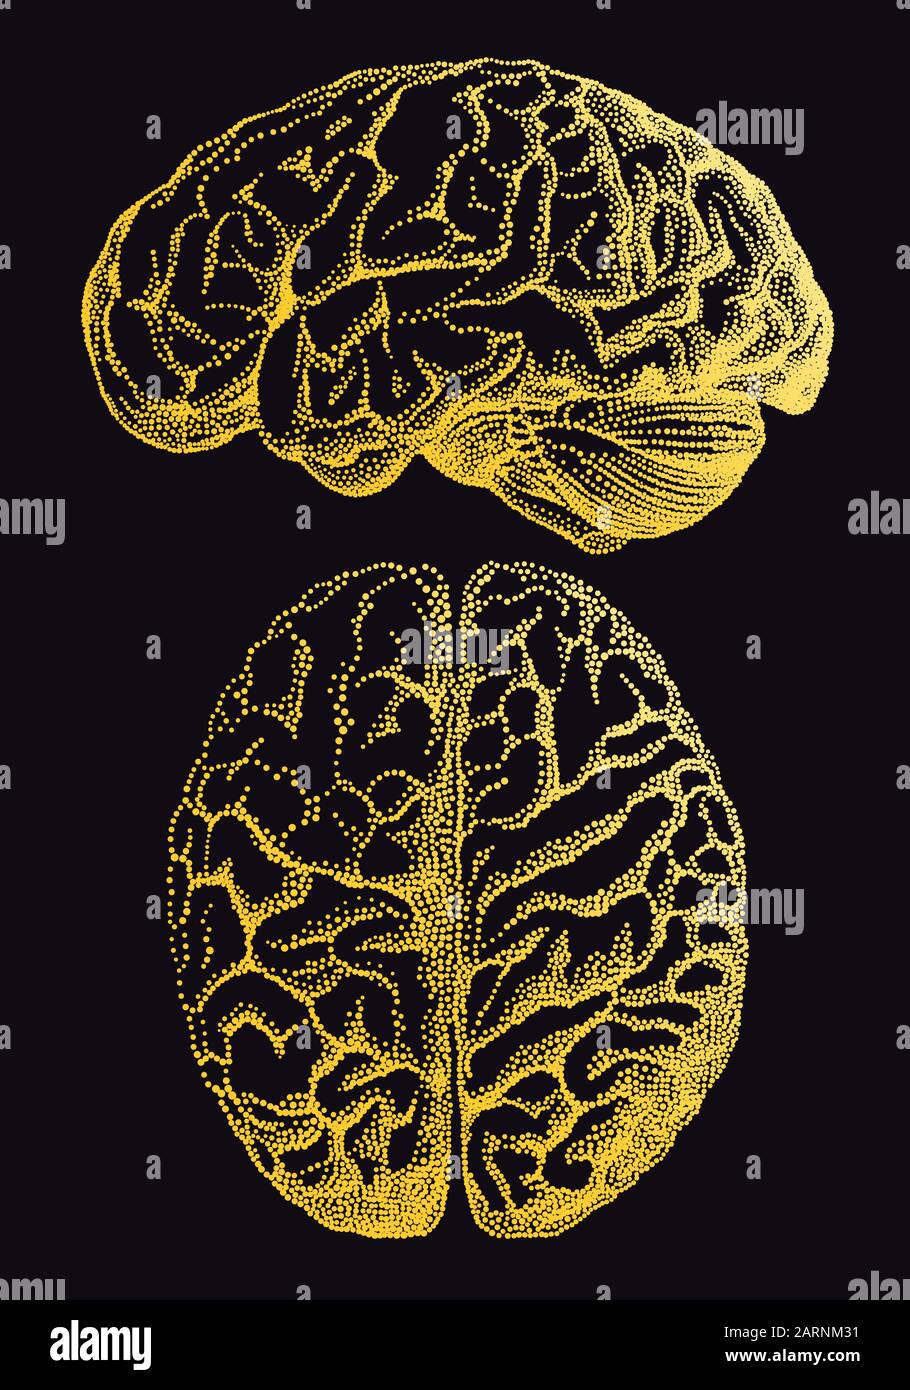 Cerebro humano dorado, ilustración vectorial anatómica vintage sobre fondo negro Ilustración del Vector